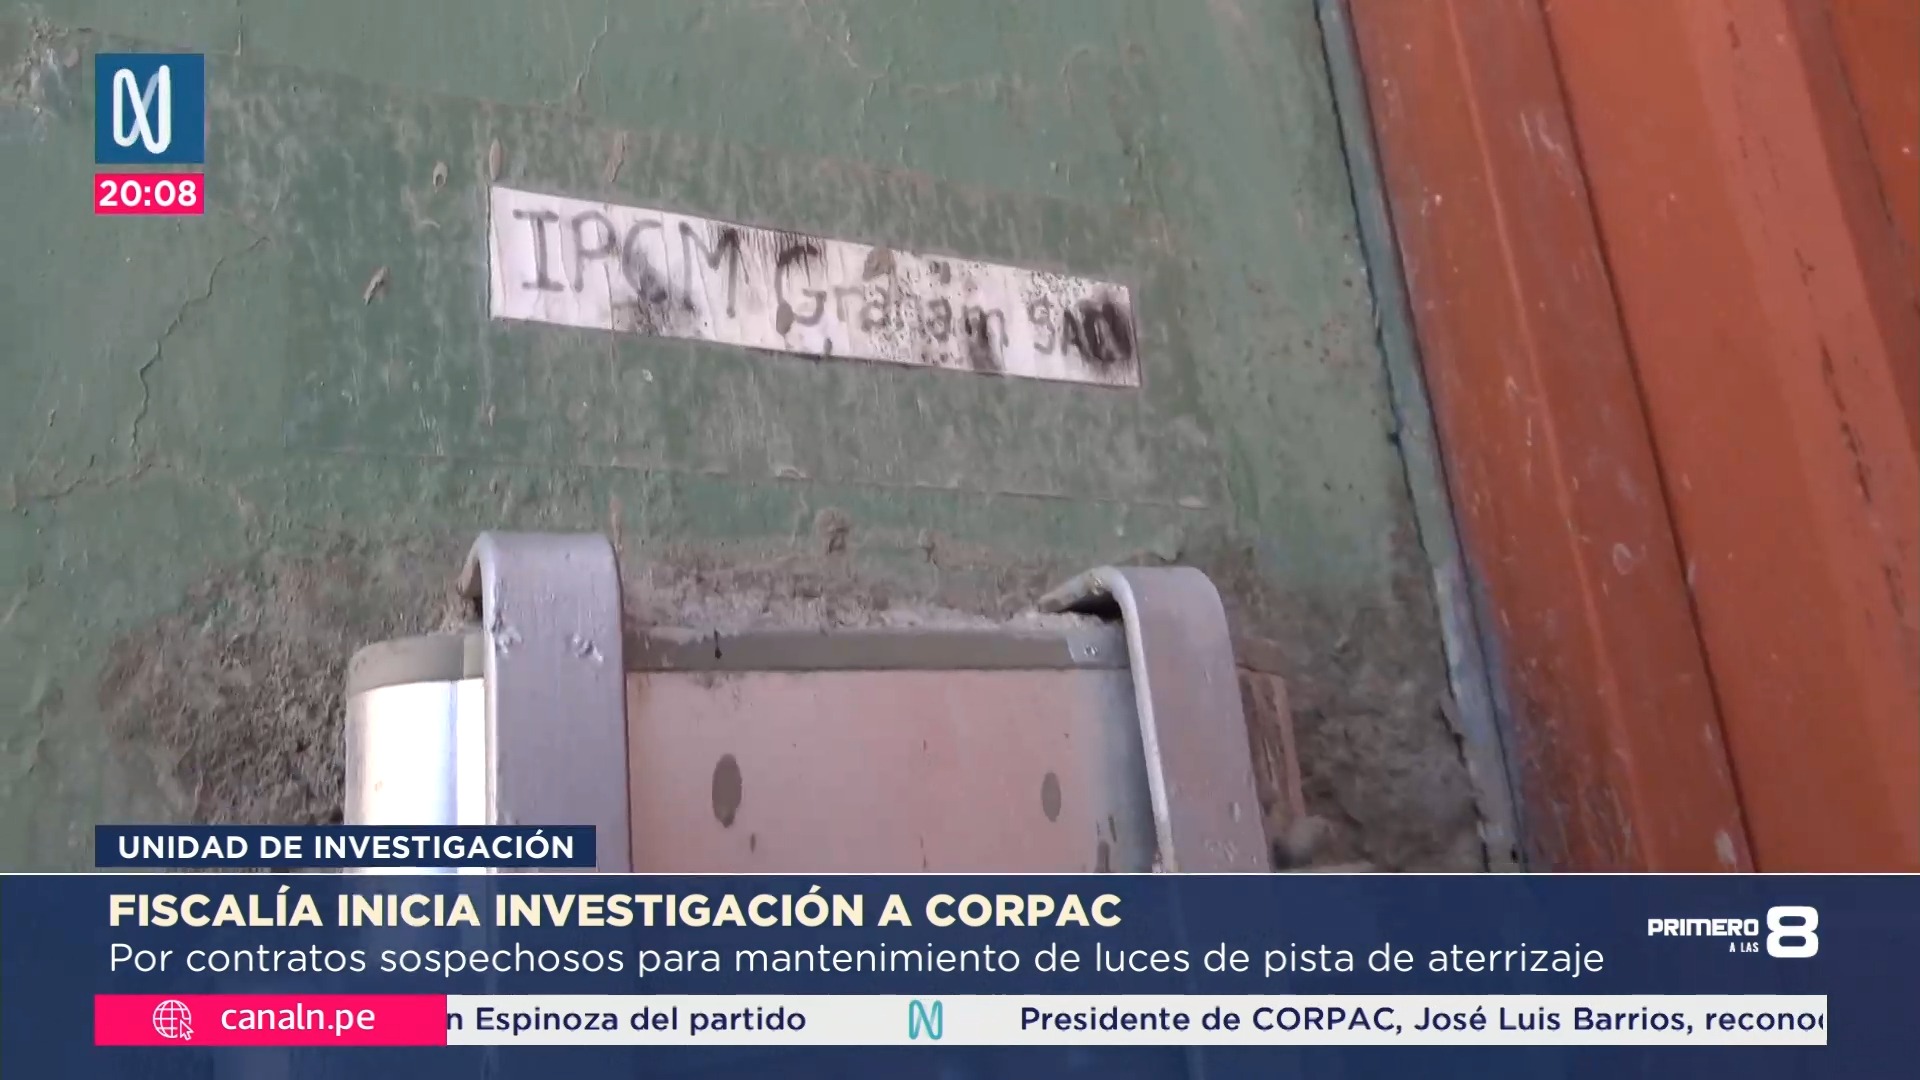 Aeropuerto Jorge Chávez: Ubican direcciones legales de empresas que dieron mantenimiento a luces de la pista de aterrizaje